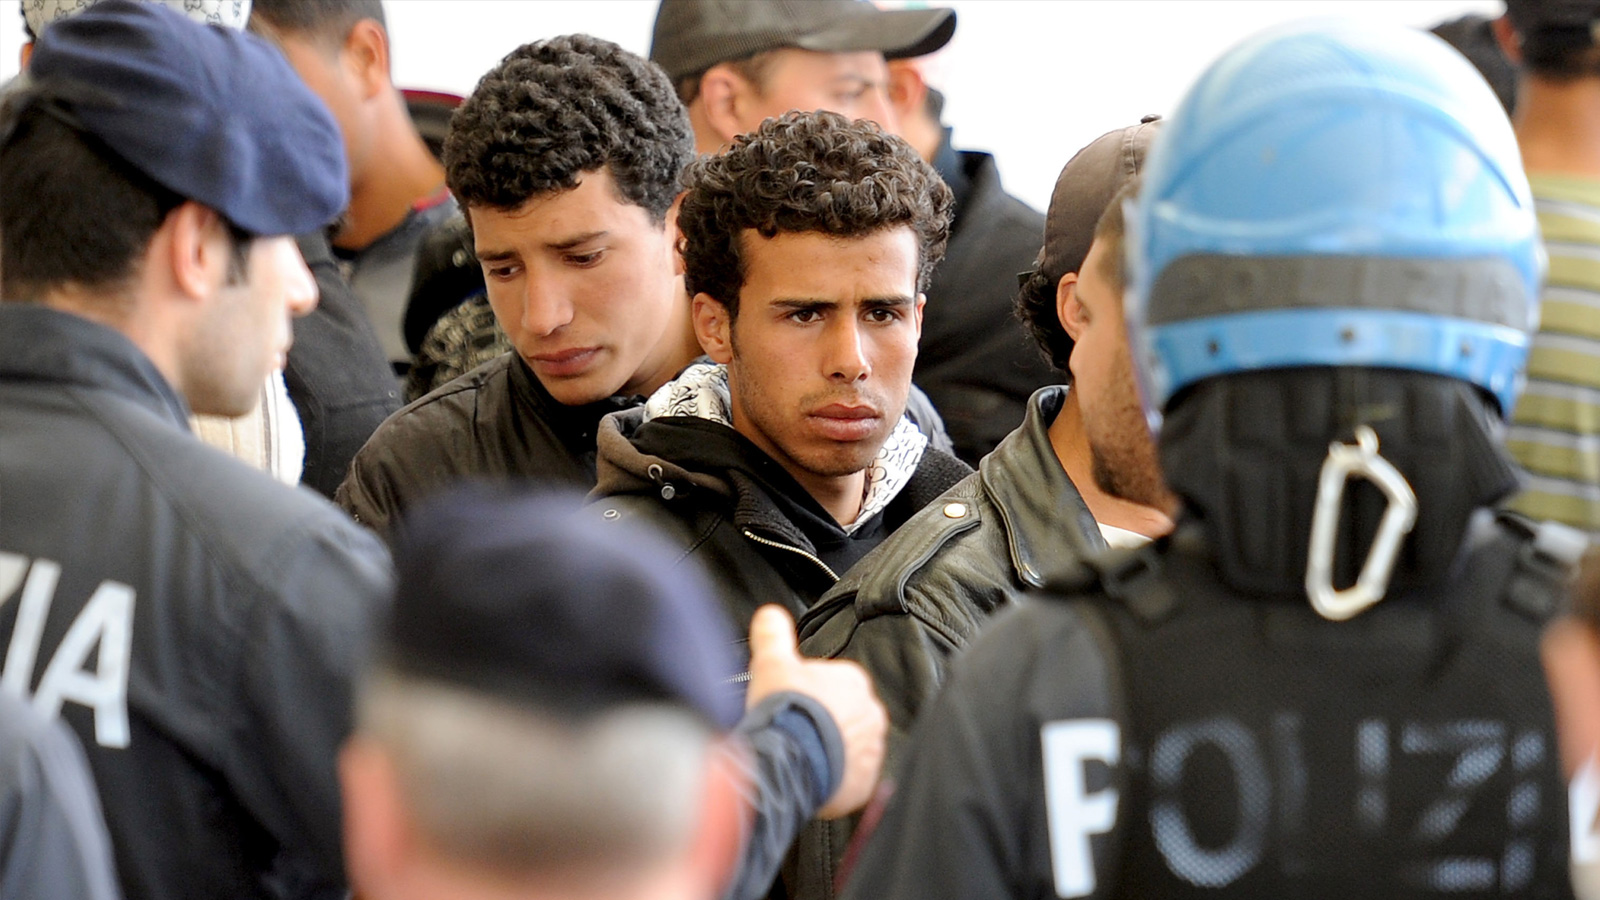 ‪تونسيون في مقر إيواء للمهاجرين غير النظاميين في جزيرة لمبيدوزا الإيطالية‬ (الأوروبية)